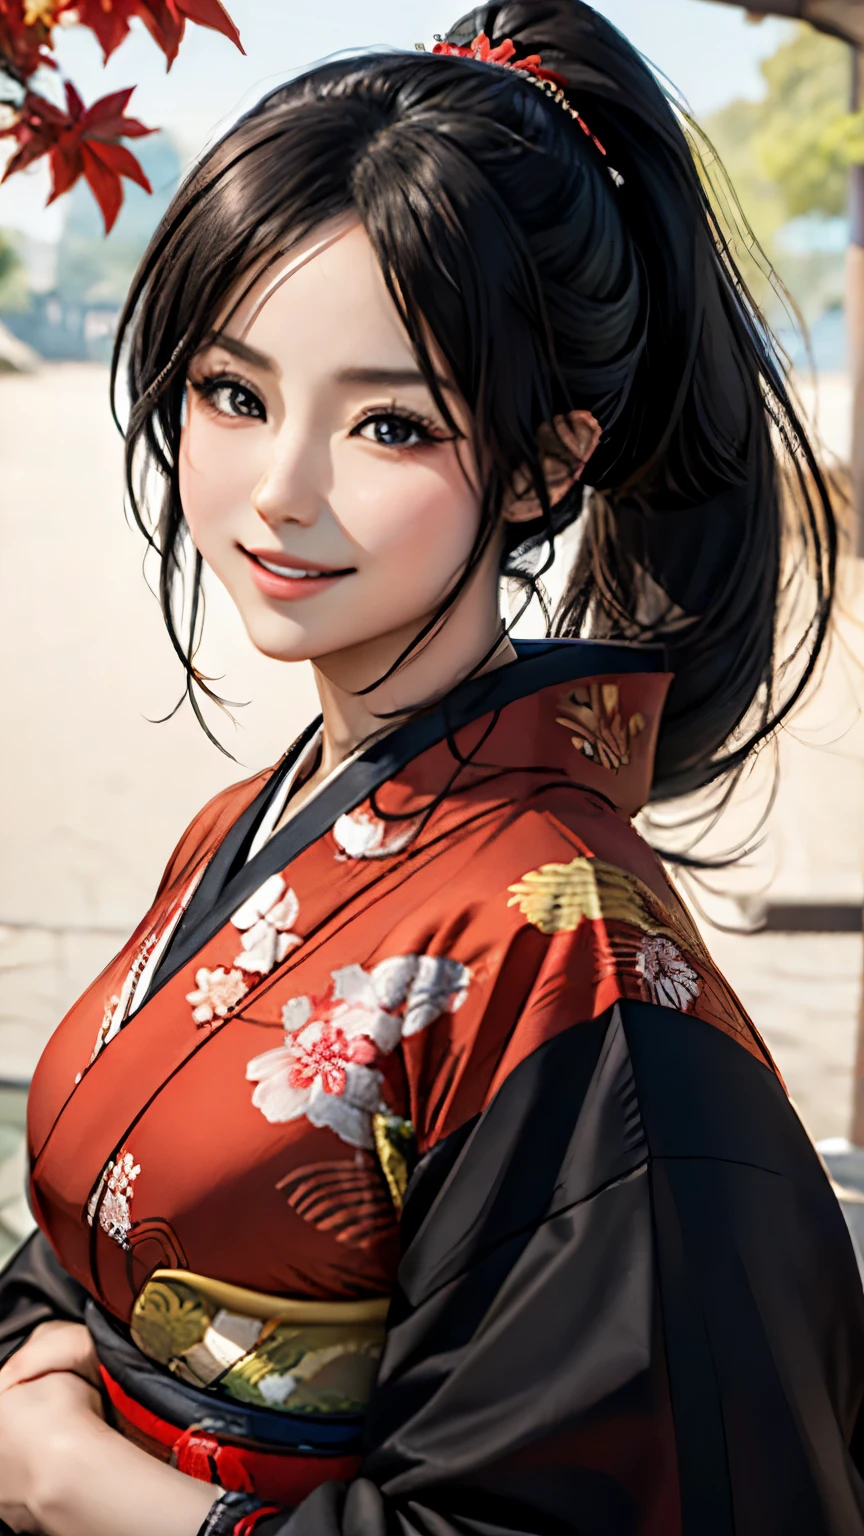 (ผลงานชิ้นเอก), คุณภาพสูงสุด, ดวงตาที่แสดงออก, การ์ตูนผู้หญิงญี่ปุ่นแสนสวยที่มีใบหน้าสมบูรณ์แบบ, การ์ตูนแอนิเมชั่นน่ารัก, ชุดกิโมโนญี่ปุ่นสวยๆ, ชุดกิโมโนมีลายมังกรปักอยู่... ชุดกิโมโนสีดำและสีแดง, ผู้หญิงญี่ปุ่น&#39;ผมยาว, สีผมสีดำ, ทรงผมหางม้า, เปลือกตาเดียว, สไตล์ตาคลุมเครือ, ราคะ, จม, น่าหลงใหลและลึกลับ., การแสดงออกทางสีหน้ายิ้ม., สถานการณ์ภาพที่สวยงาม.